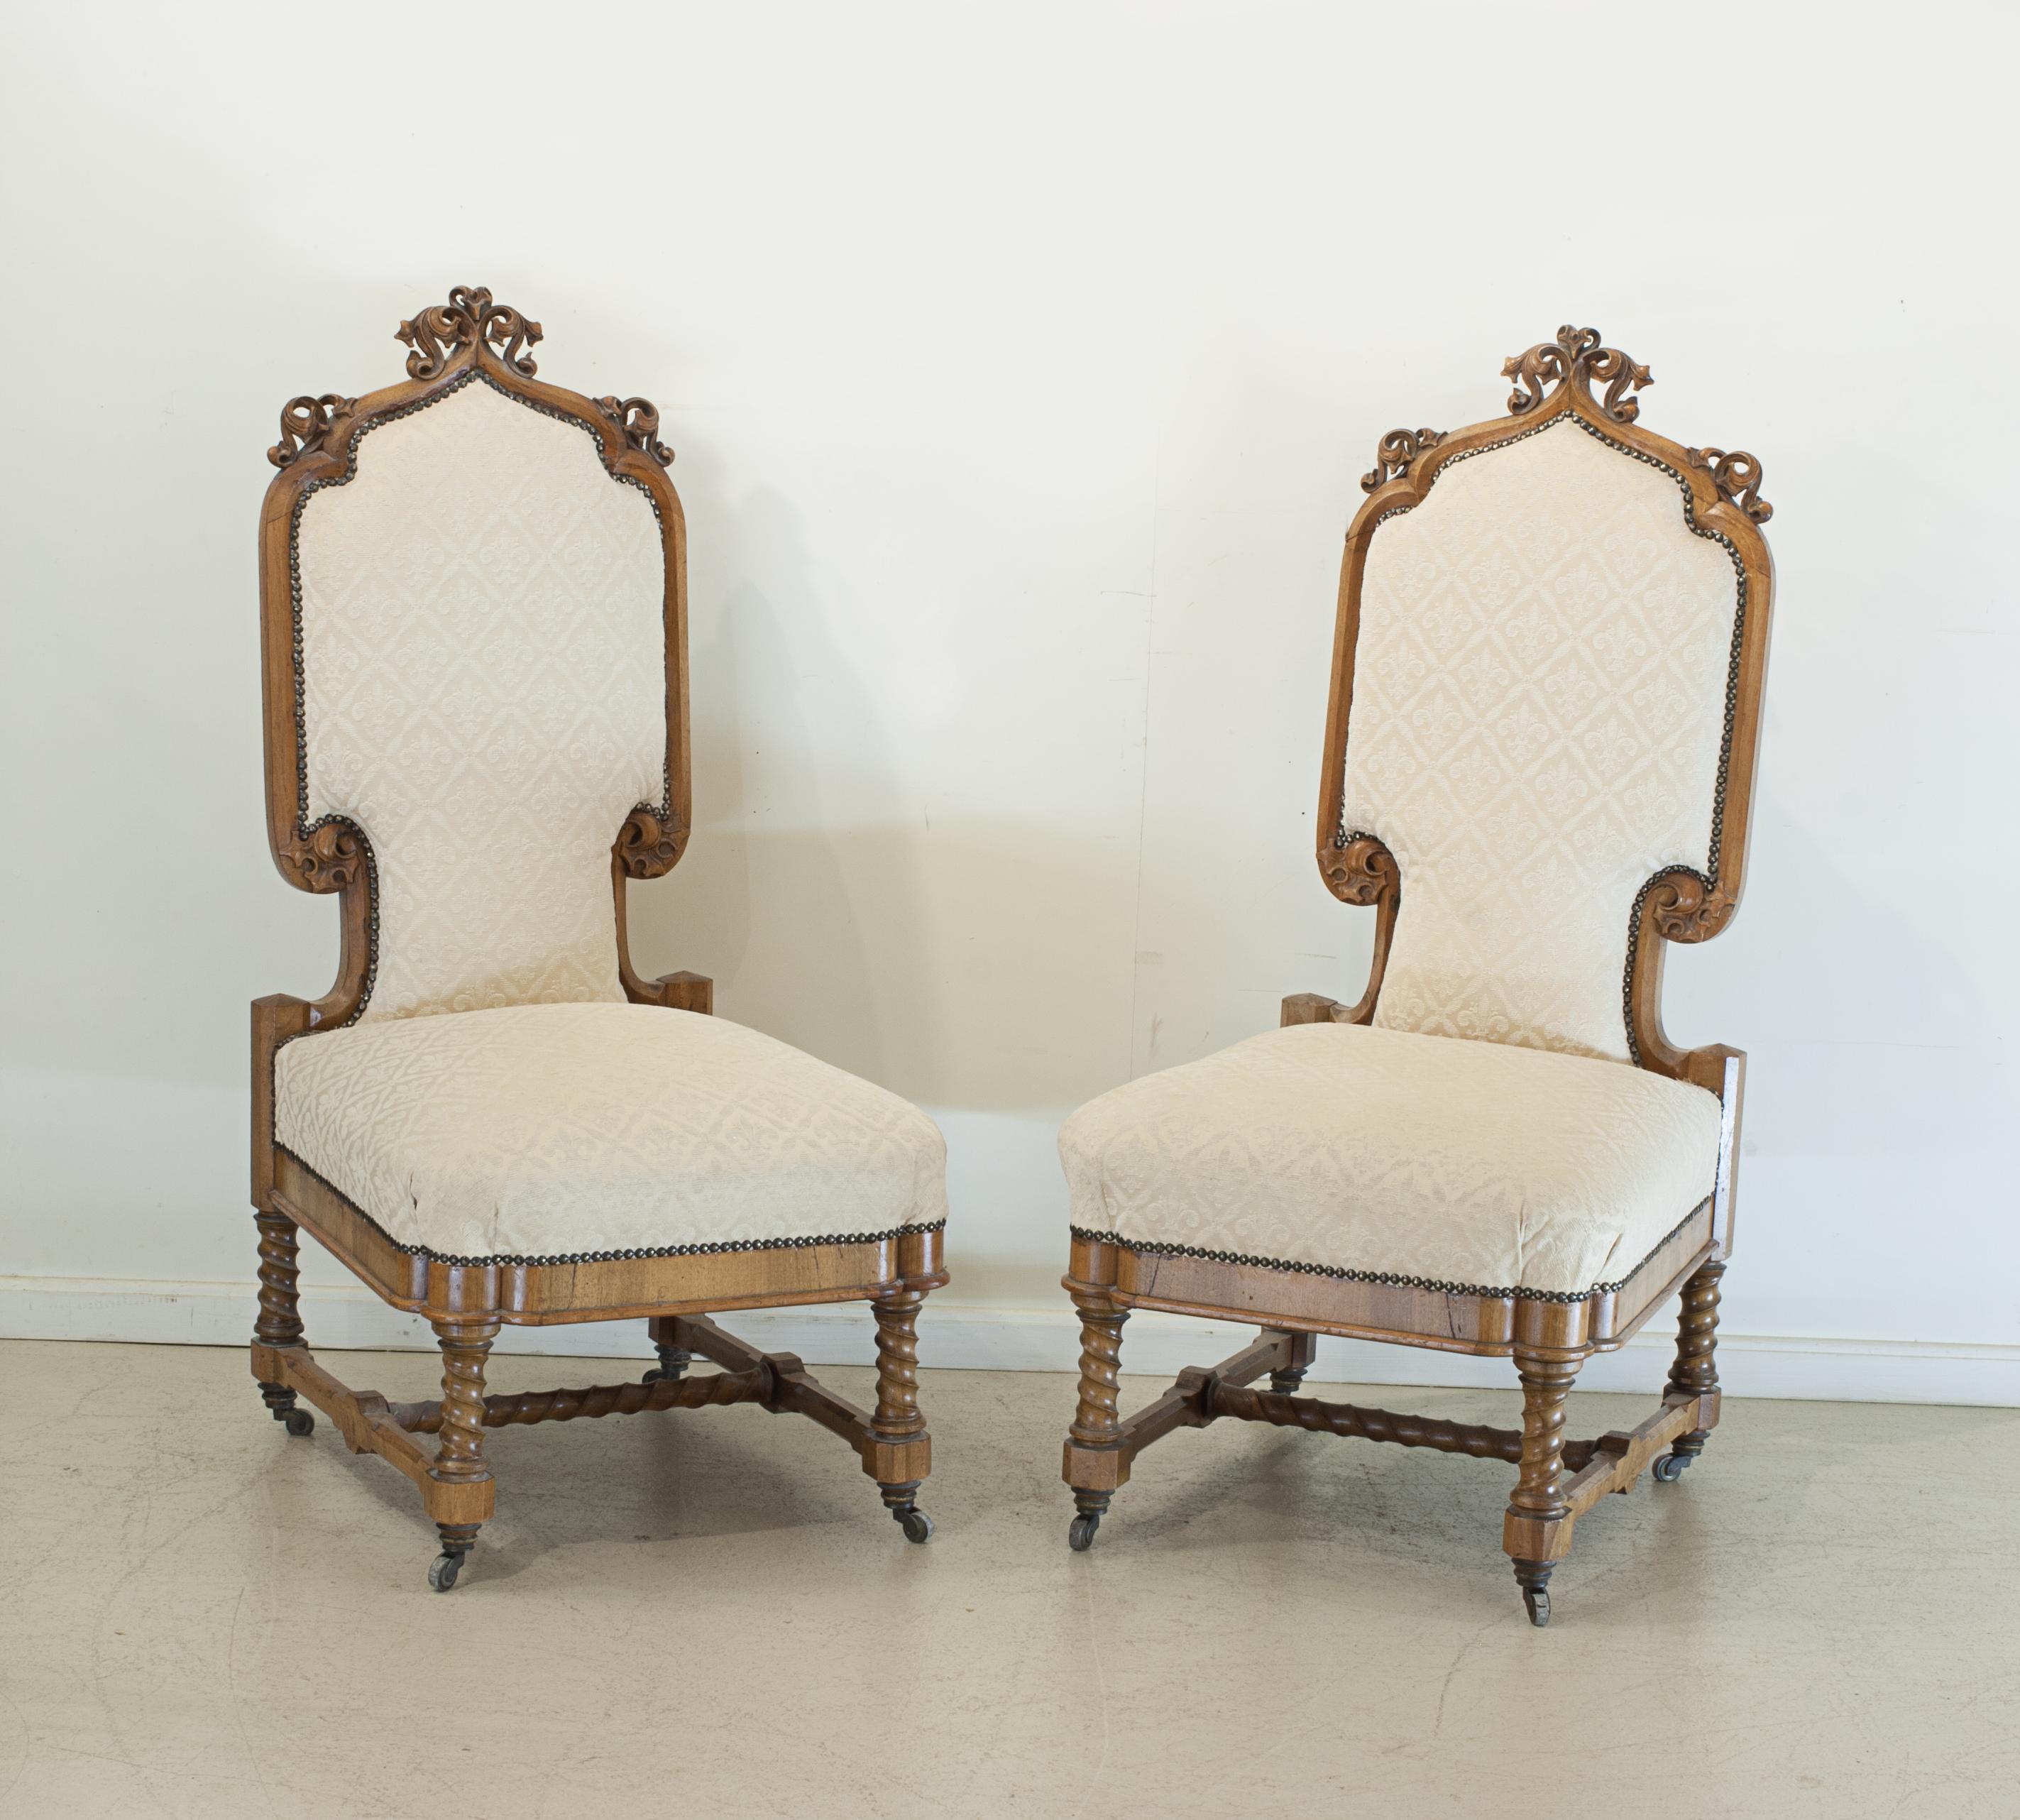 Paar geschnitzte kontinentale Stühle des 19. Jahrhunderts.
Ein schönes Paar gepolsterte Arts & Crafts Stühle, die geschnitzten Nussbaum Rahmen mit klaren Details, Bahre eine Spirale Korkenzieher-ähnliche Form (Gerste Twist-Stil) wie der untere Teil